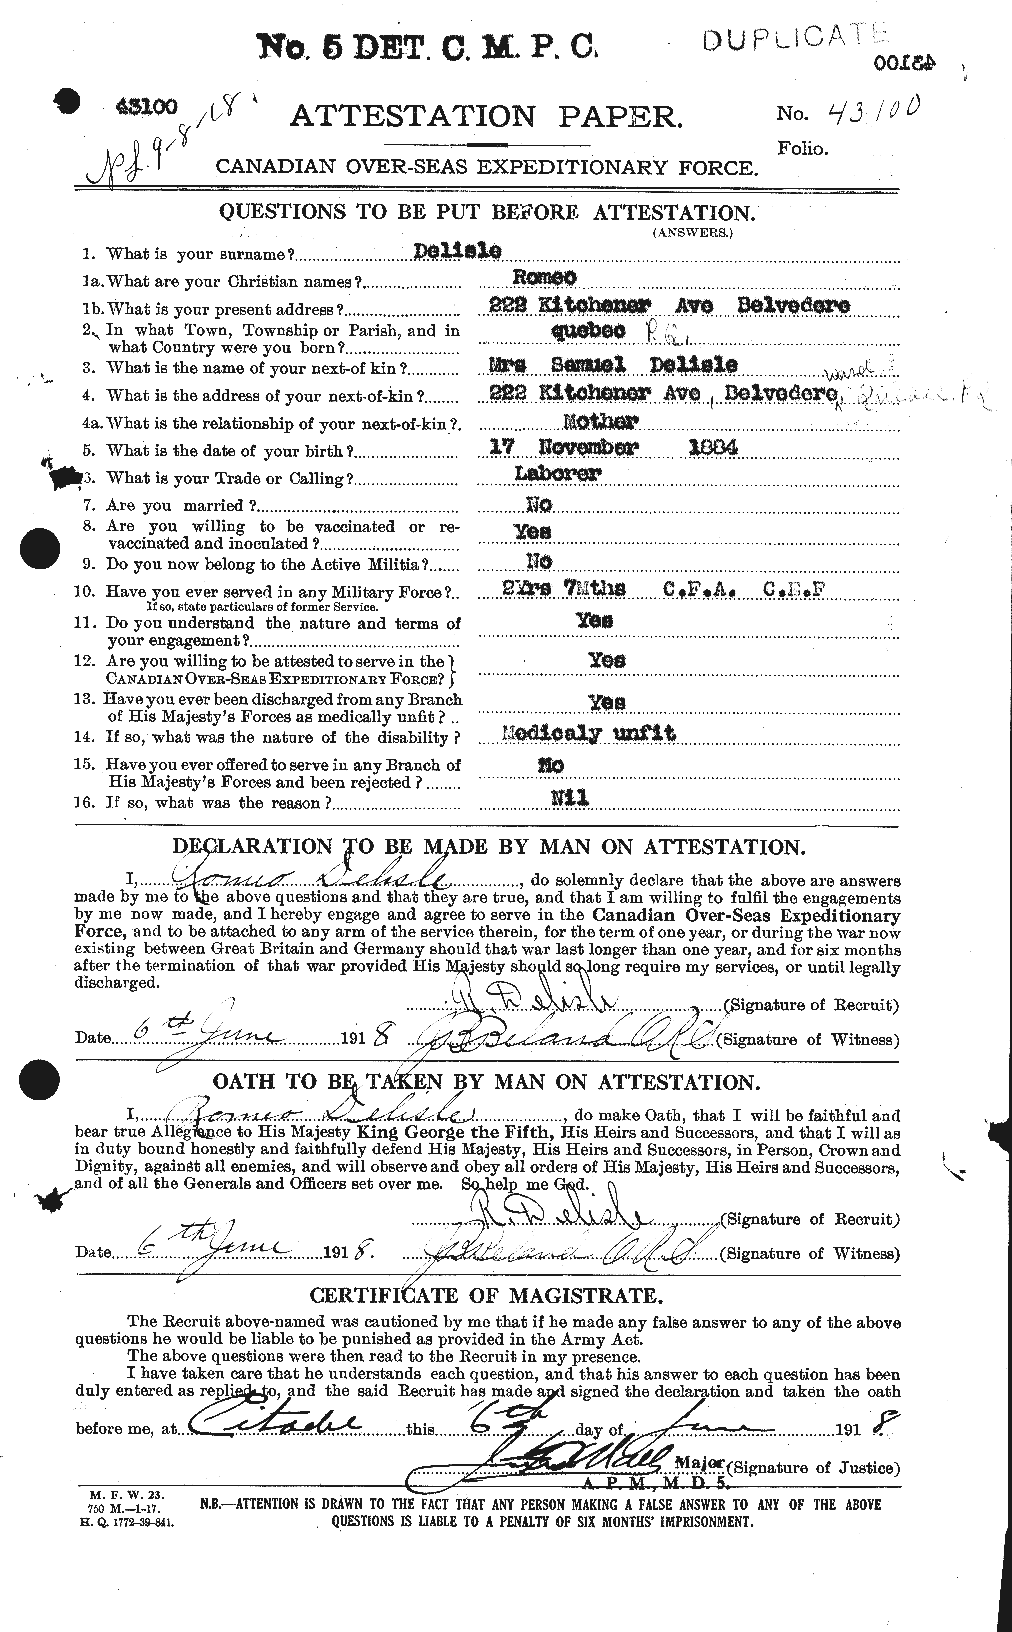 Dossiers du Personnel de la Première Guerre mondiale - CEC 286641a